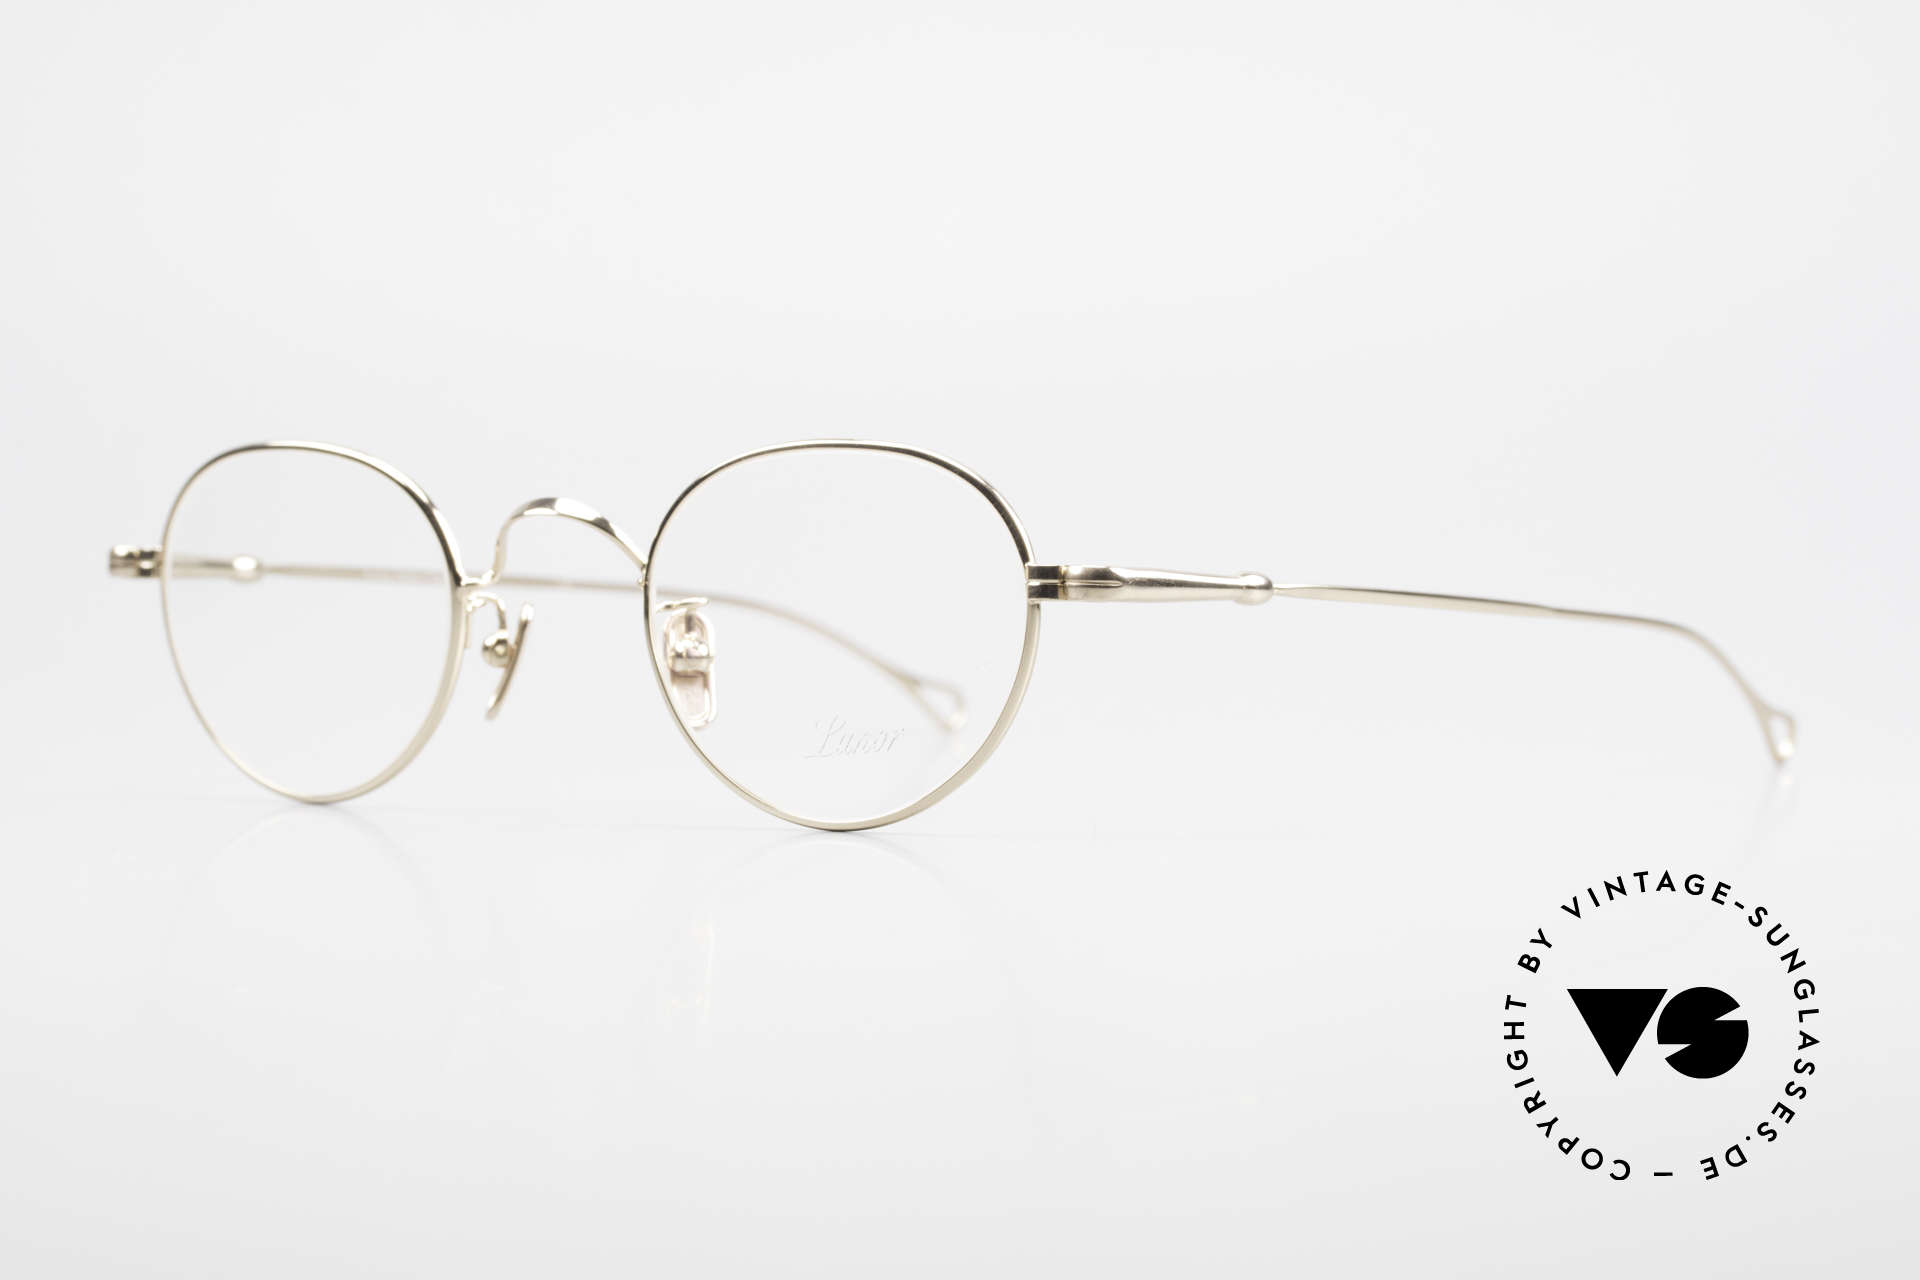 Lunor V 107 Panto Eyeglasses Gold Plated, model V 107: very elegant Panto glasses for gentlemen, Made for Men